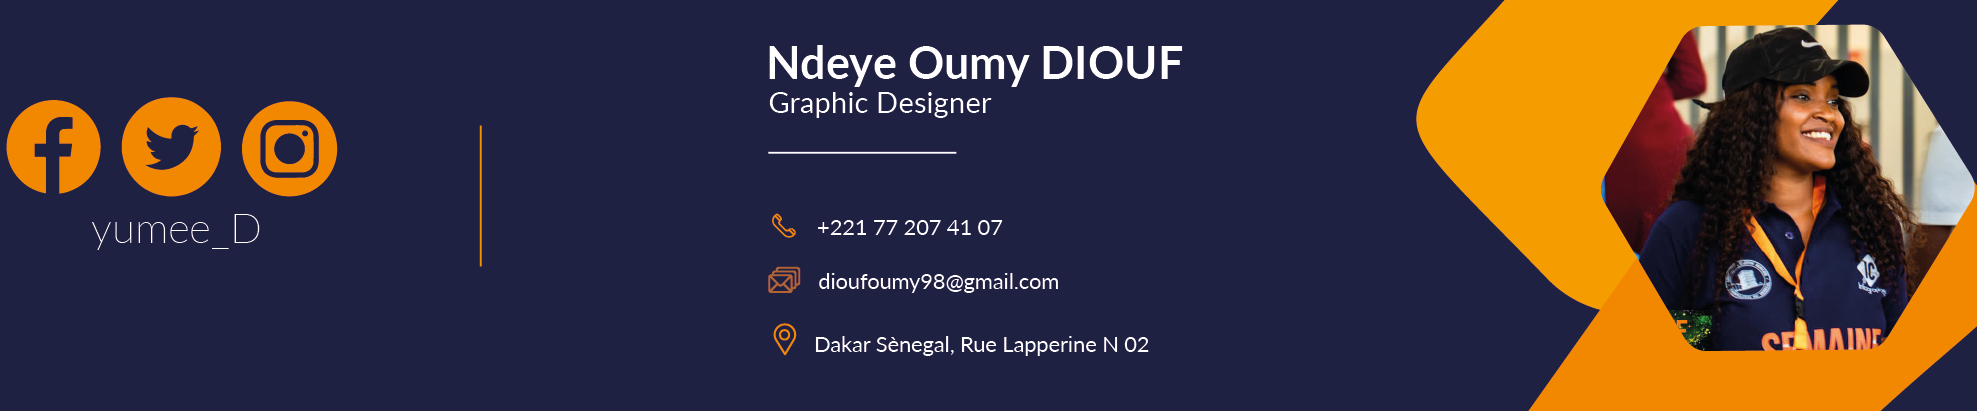 Bannière de profil de Ndeye Oumy Diouf